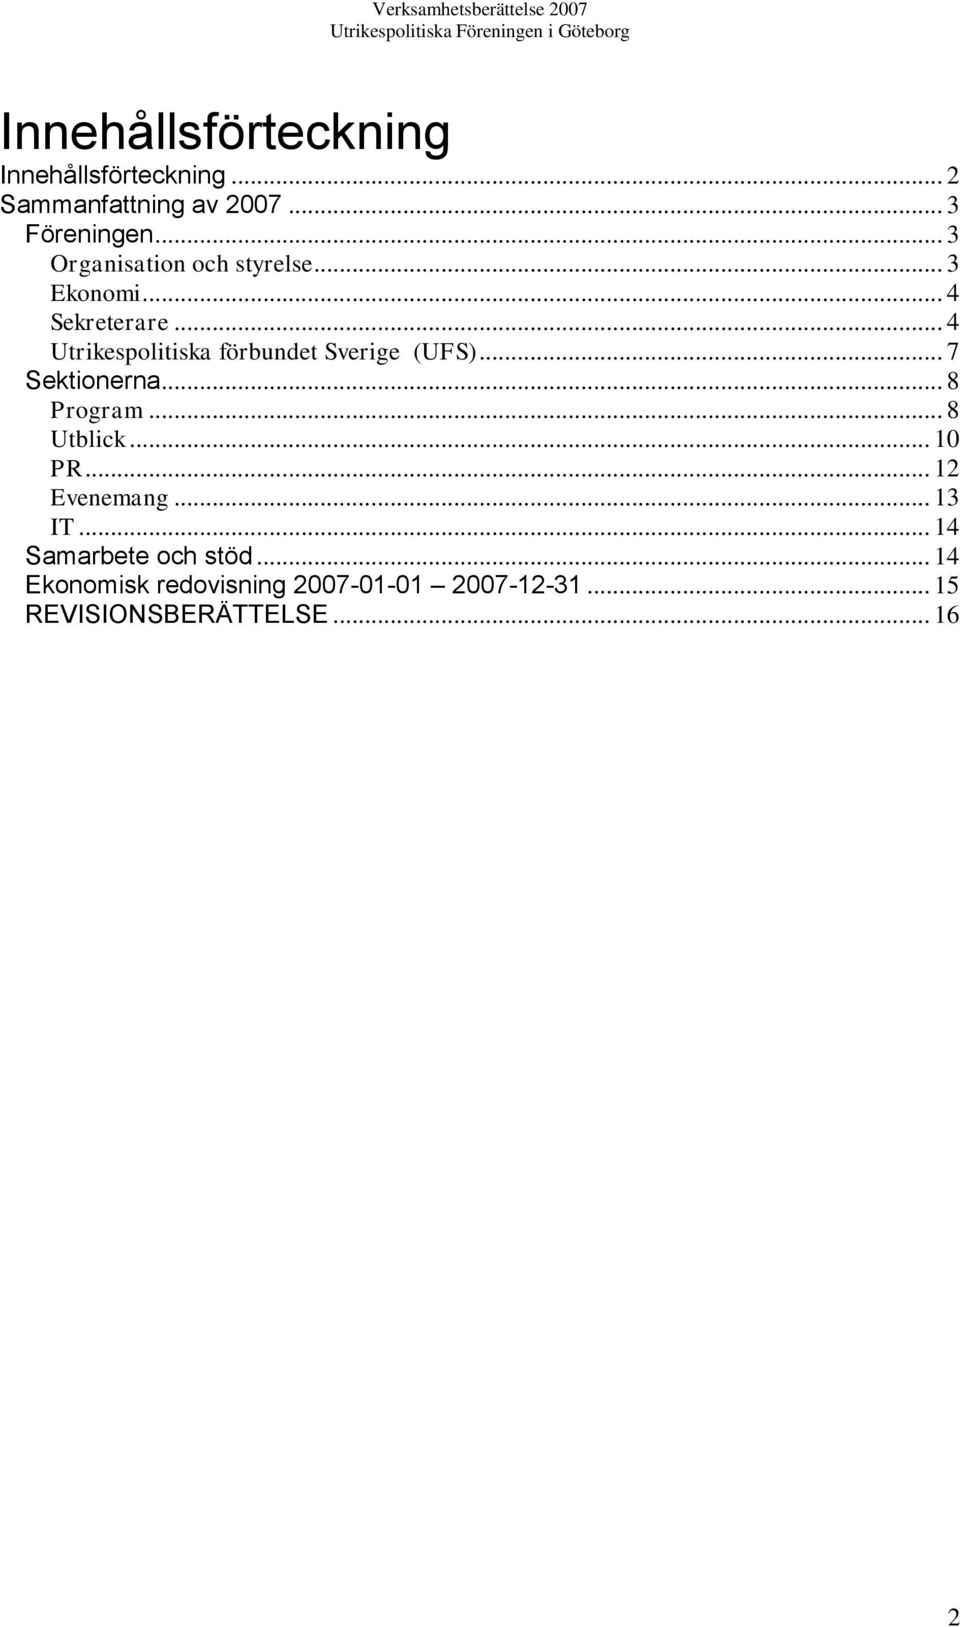 .. 4 Utrikespolitiska förbundet Sverige (UFS)... 7 Sektionerna... 8 Program... 8 Utblick.